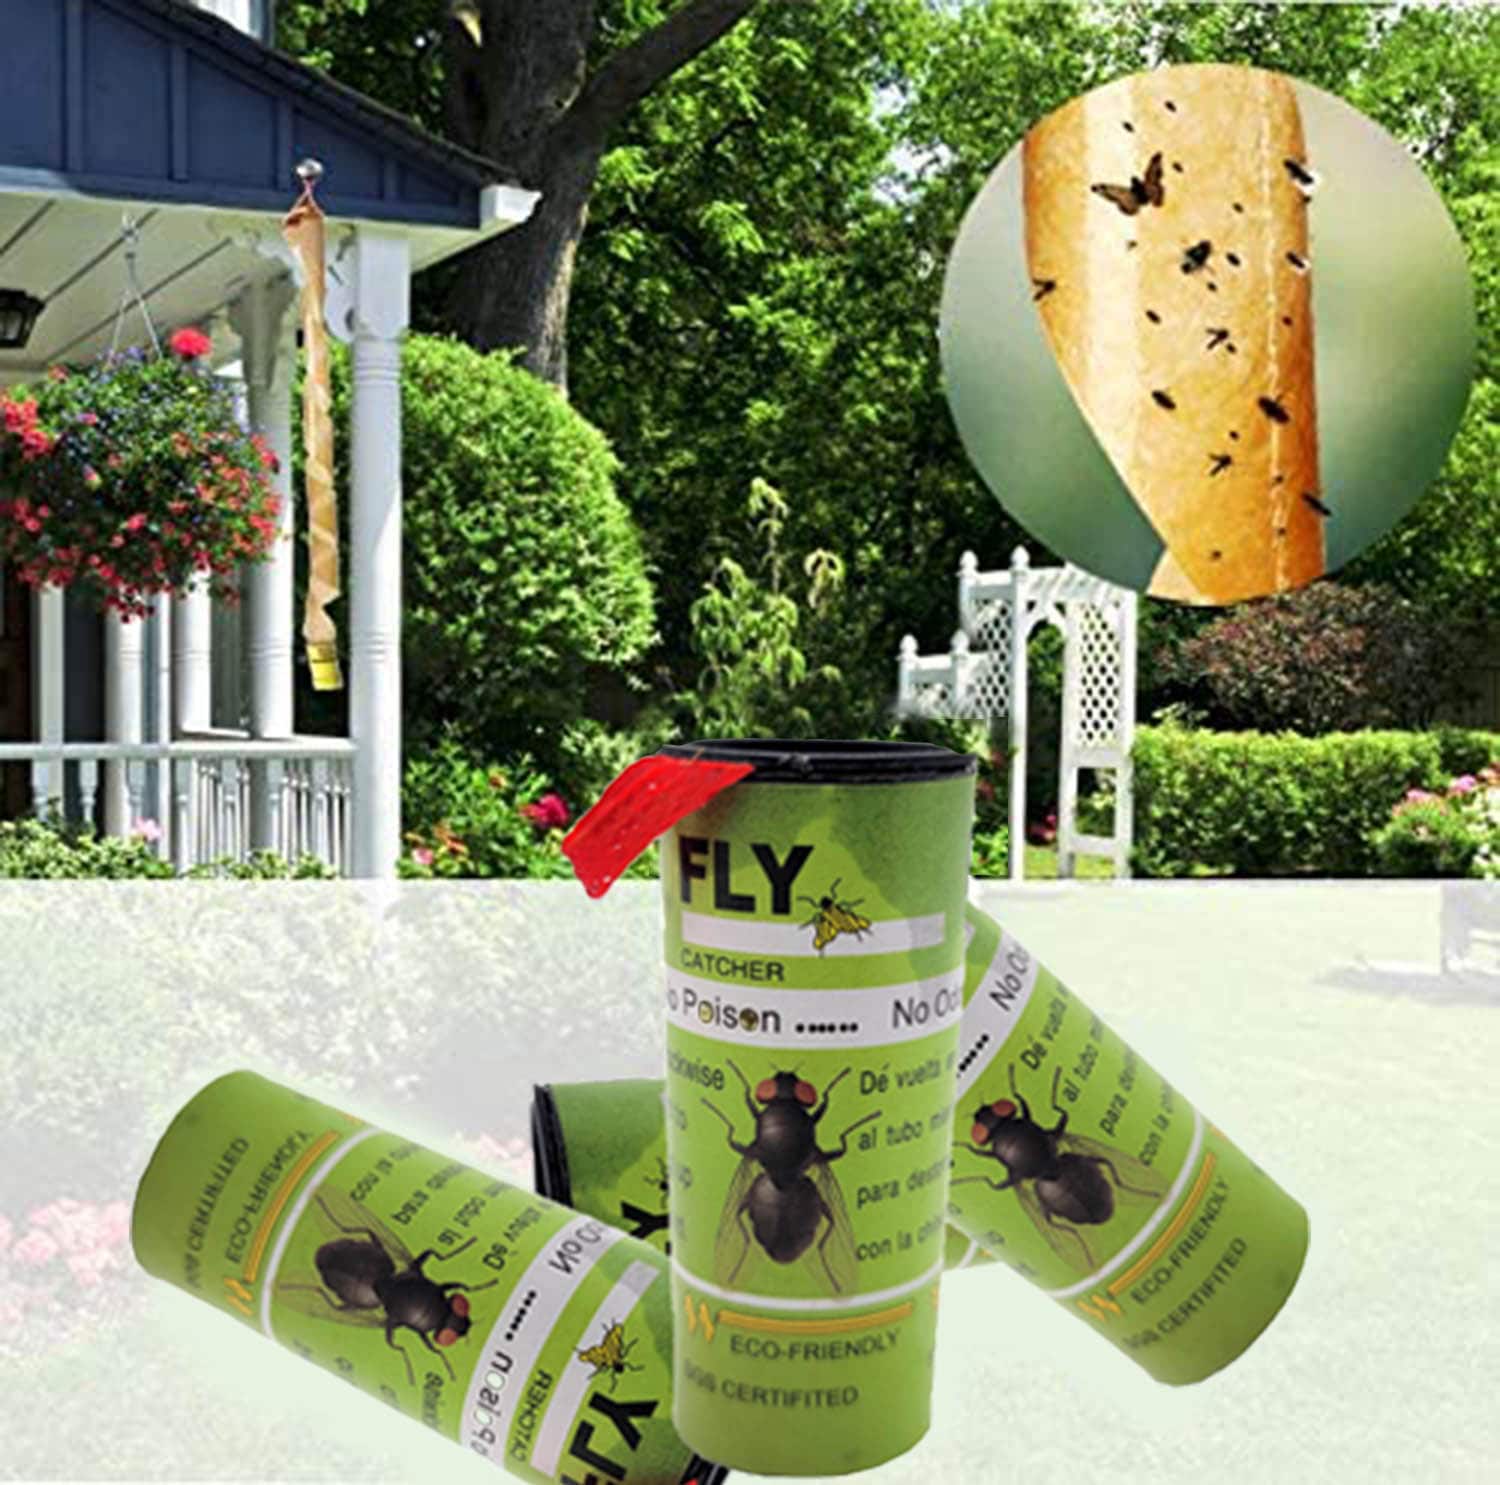  Musca-Stik Sticky Fly Trap-24 Sticks : Patio, Lawn & Garden